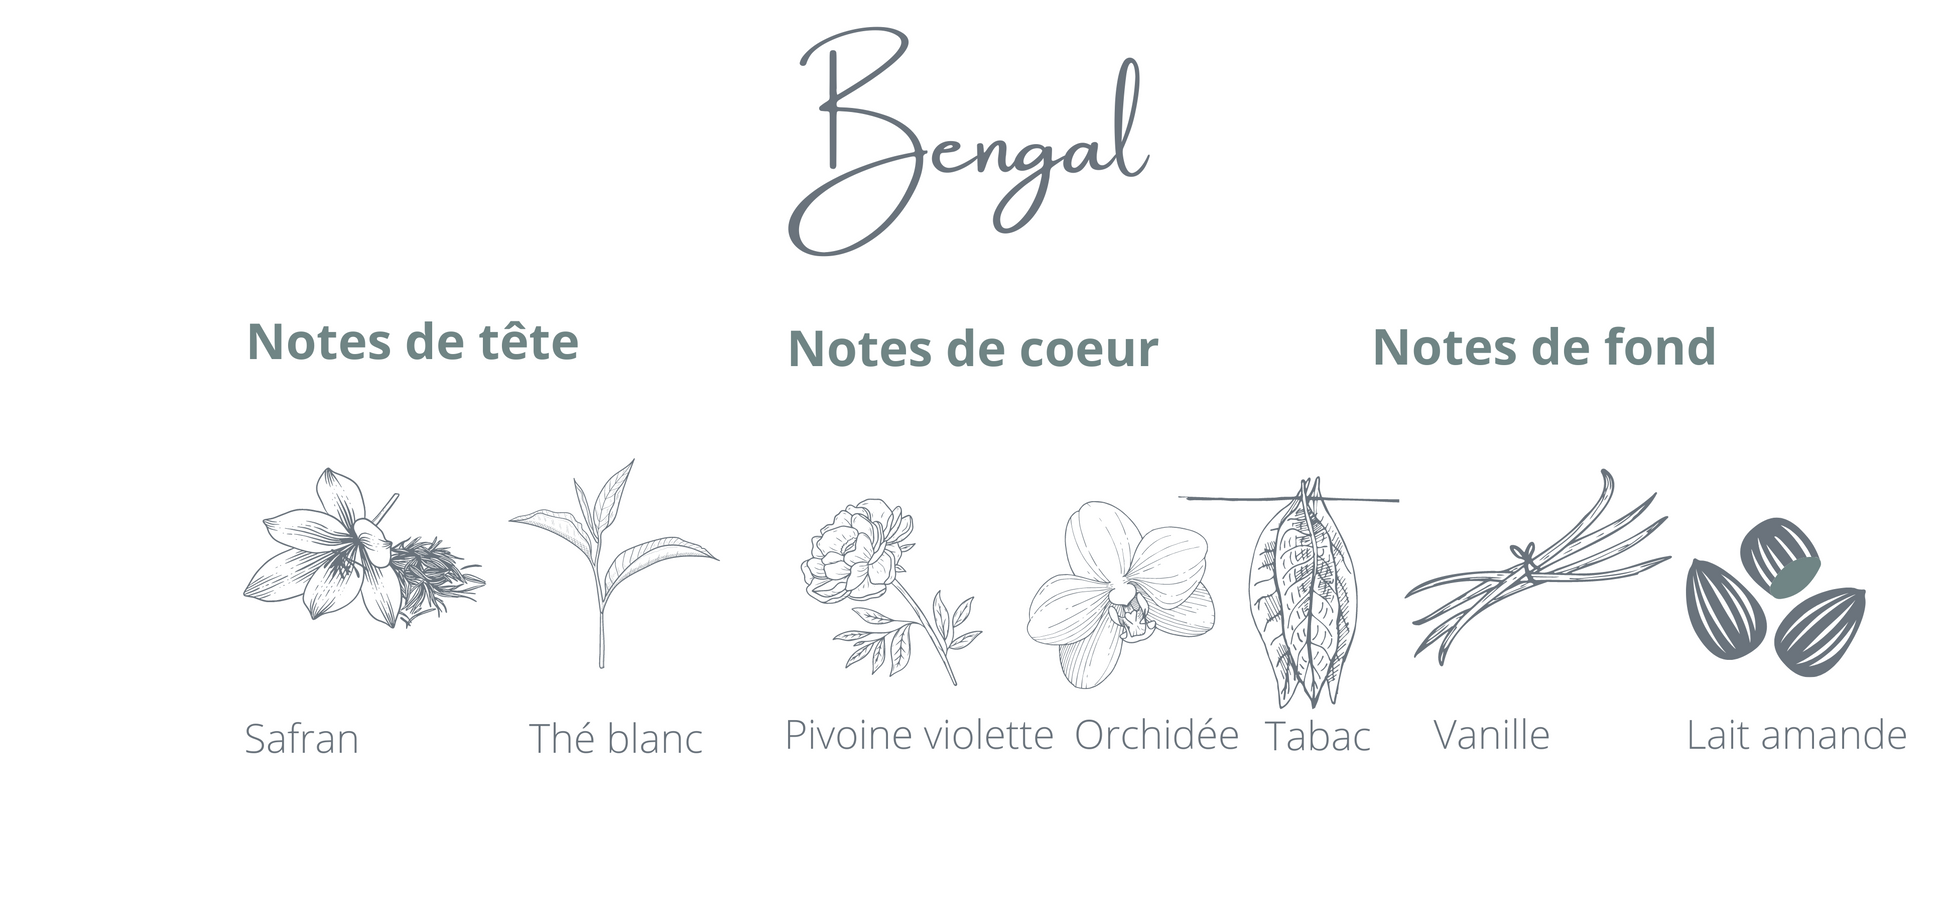 Recharge - Bengal - Coton Corail - Bougie montréal - chandelle rechargeable - notes safran thé blanc